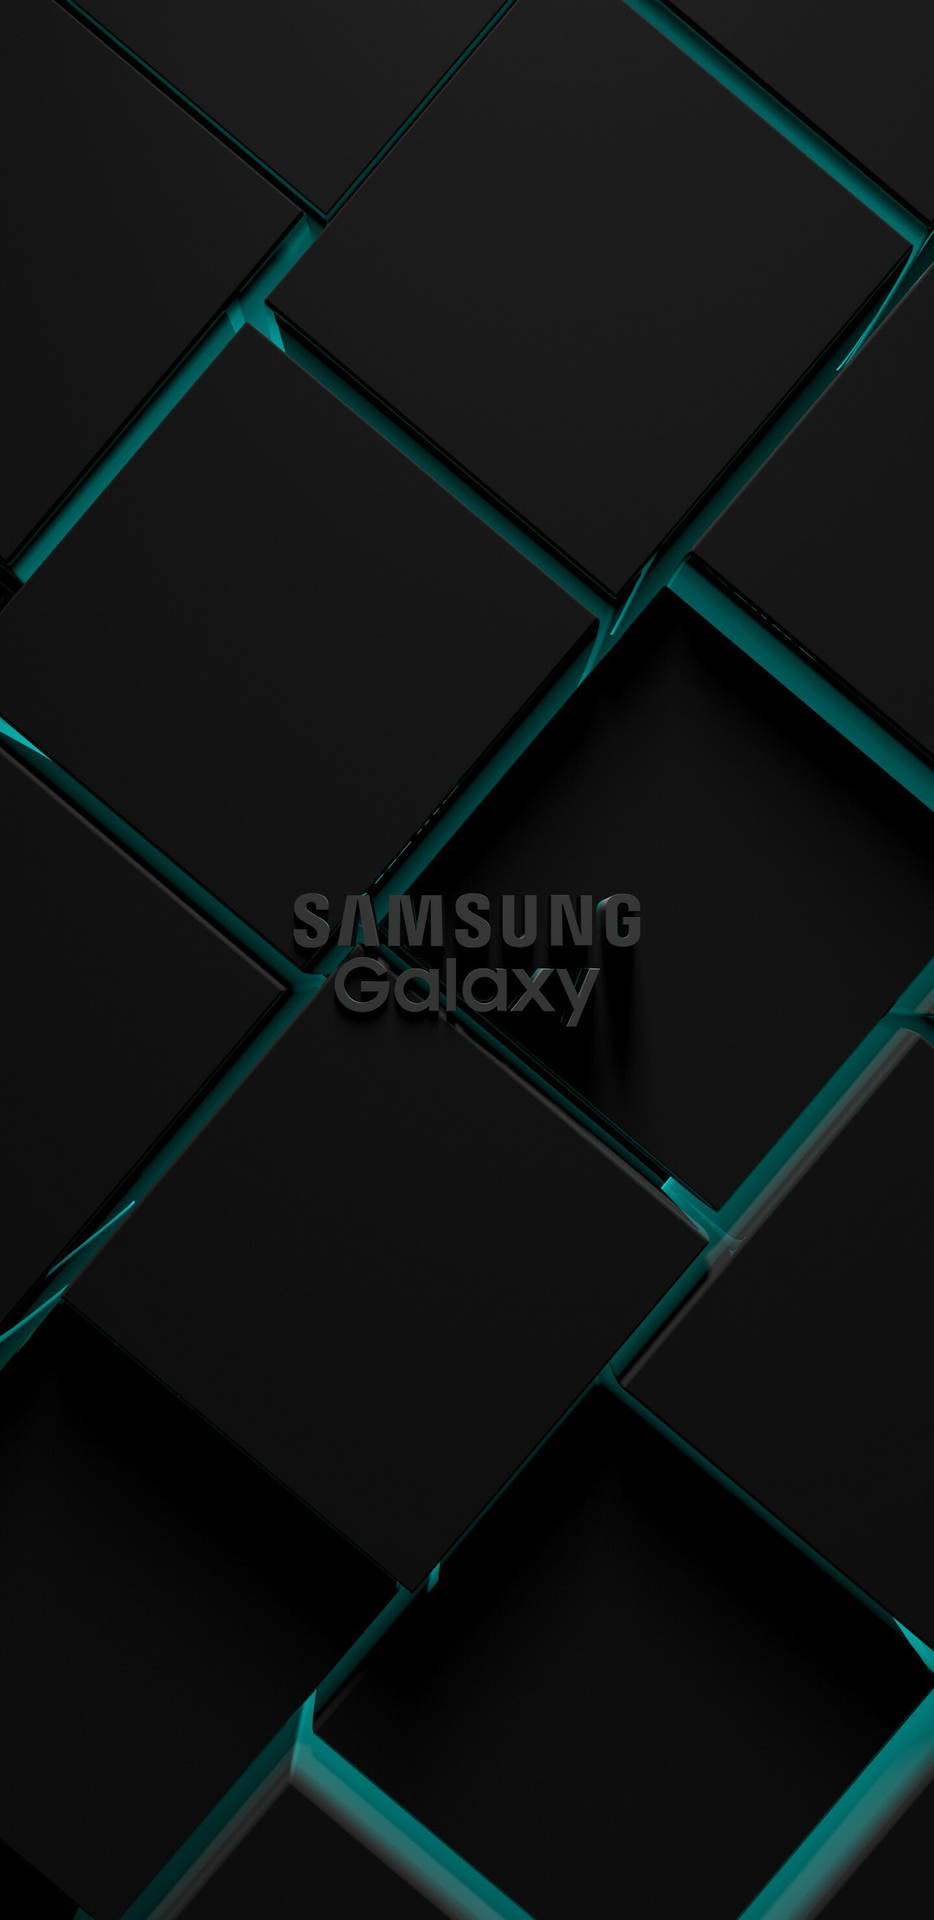 Samsung Galaxy 4k Logo Black Cubic Shapes